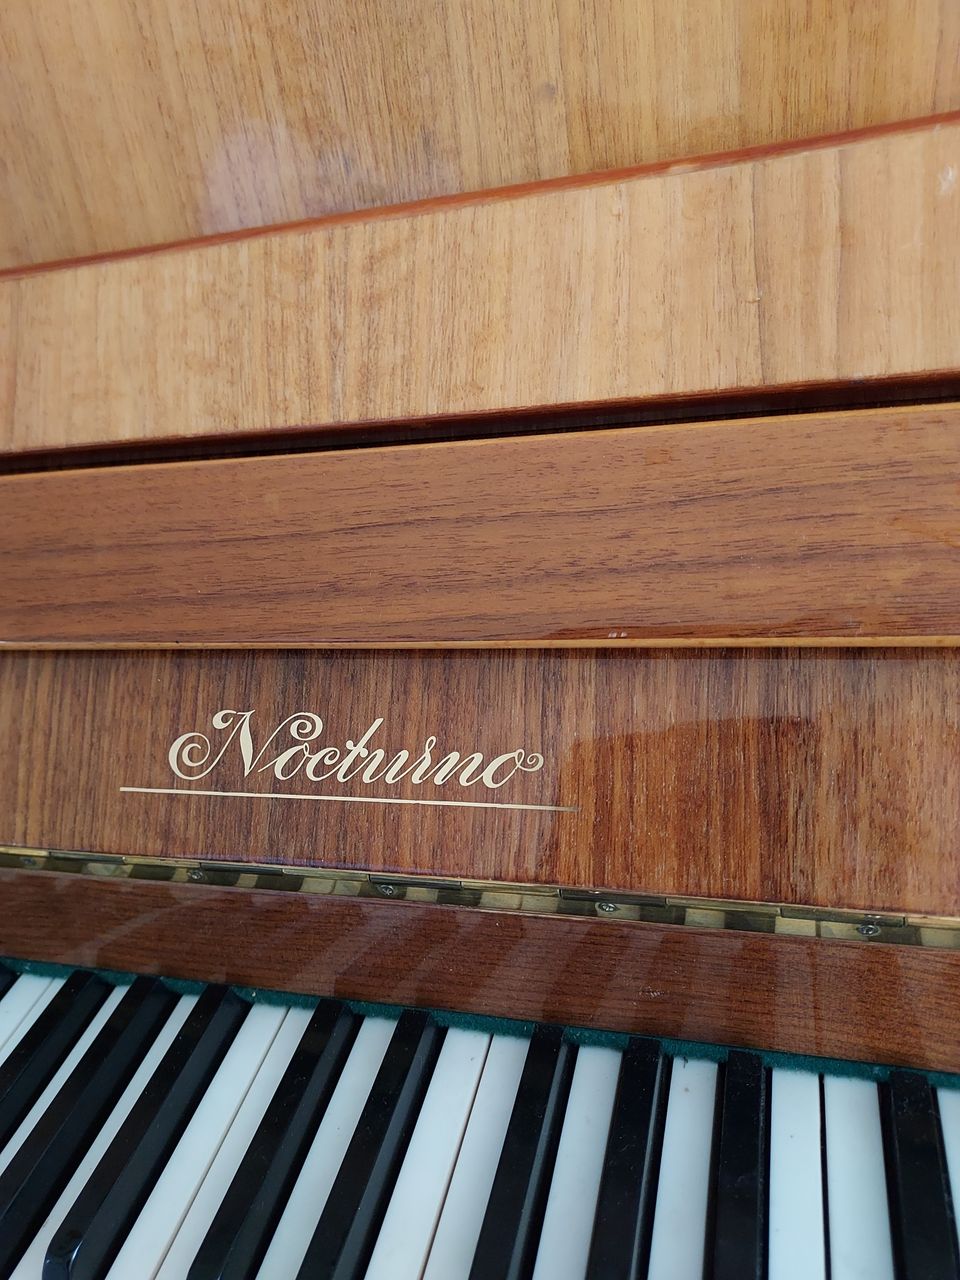 Myydään hyvä piano